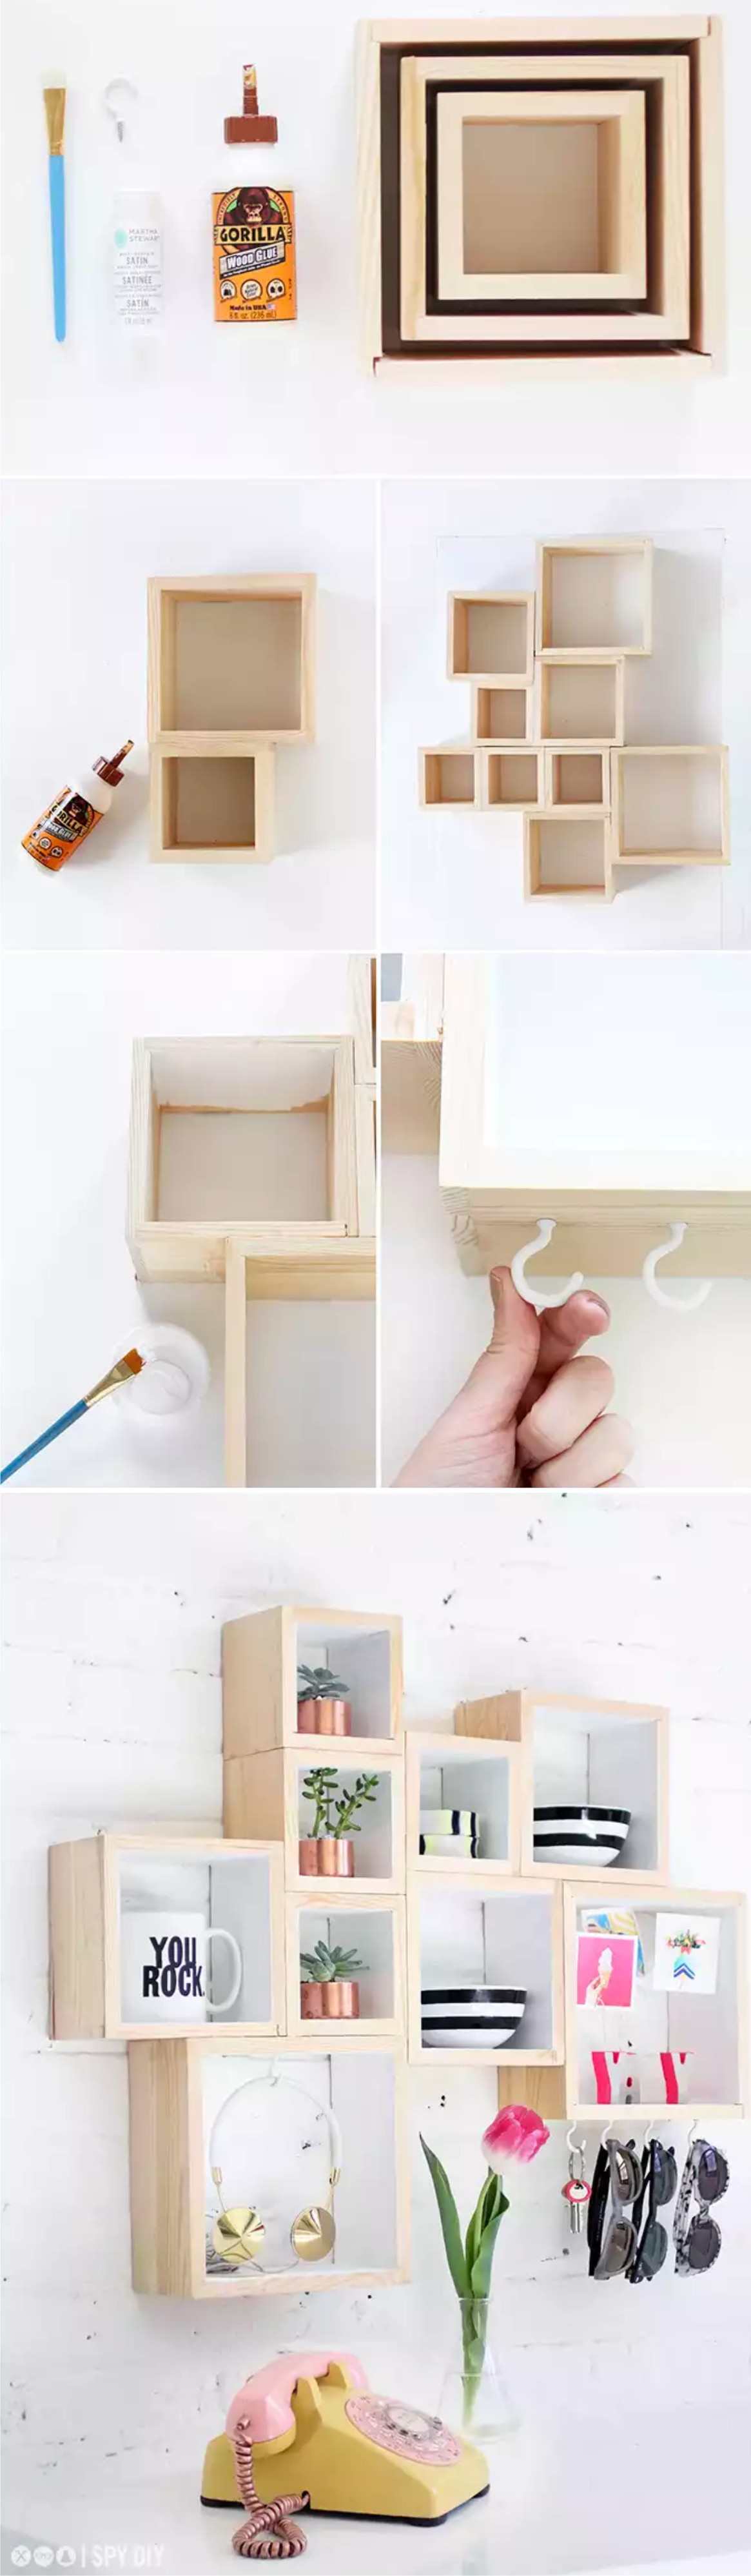 estanteria-cajas-DIY-muy-ingenioso-2